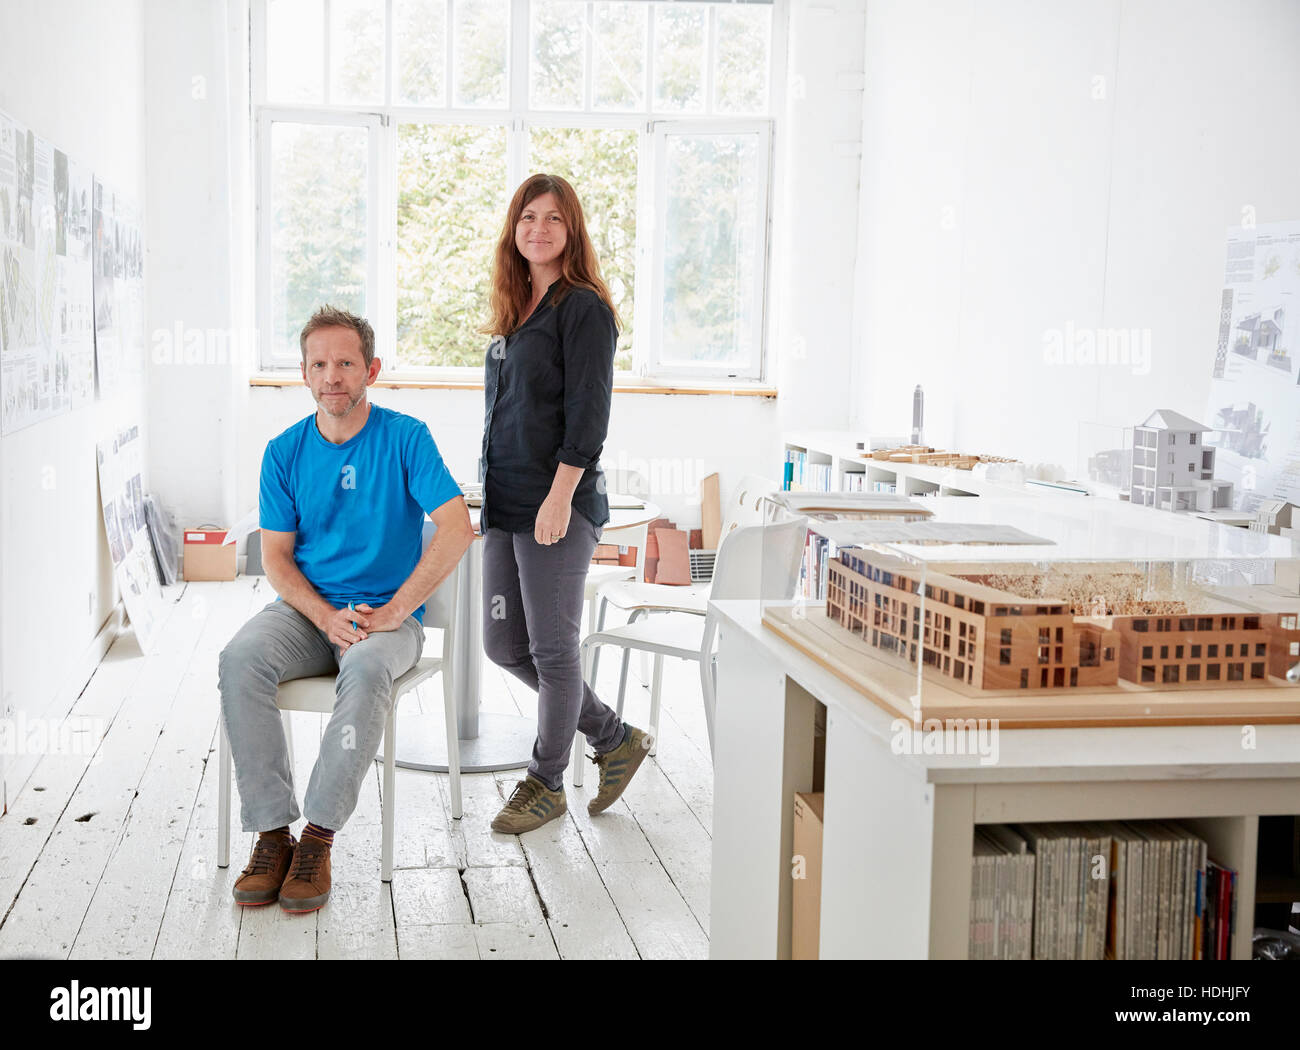 Una oficina moderna con paredes blancas y pisos. Un hombre sentado y una mujer de pie. Un modelo de arquitectura en una tabla. Foto de stock